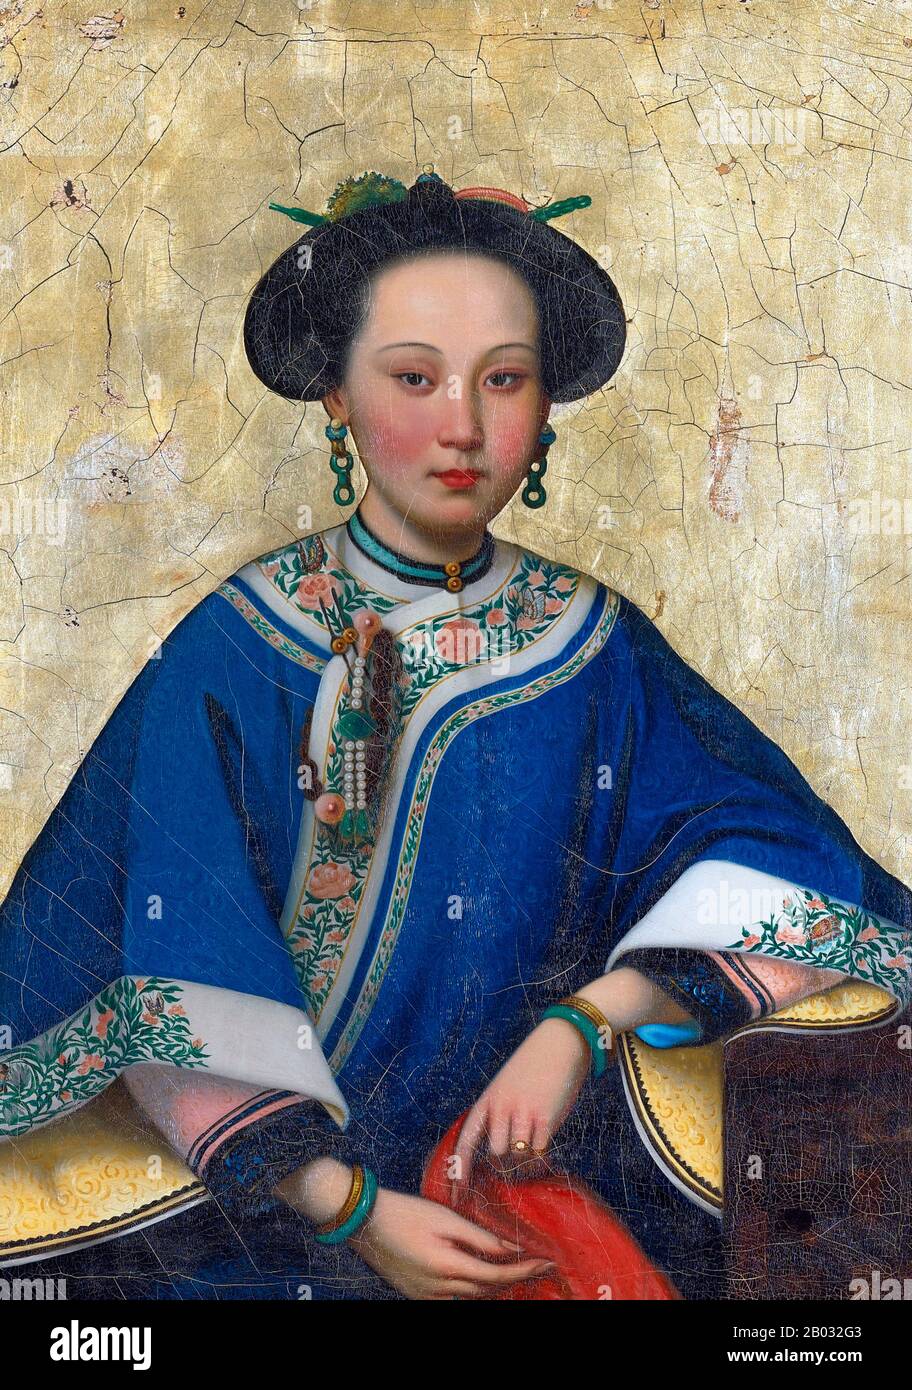 La Concubina Profumata (cinese: Xiāngfēi; Uyghur: Iparxan, Khoja Iparhan) è una figura della leggenda cinese che è stata presa come consort dall'imperatore Qianlong durante il 18th secolo. Anche se le storie su di lei si crede siano mitiche, possono essere state basate su una concubina reale dalla Cina occidentale che è entrato nell'harem dell'imperatore in 1760 e che ha portato il titolo di corte di Rong Fei. Alcuni suggeriscono, tuttavia, che Imperial Consort Rong (il cui nome originale potrebbe essere Maimur Azum) e Imperial Consort Xiang erano donne diverse. Han Chinese e Uyghur tellings della leggenda della F. Foto Stock